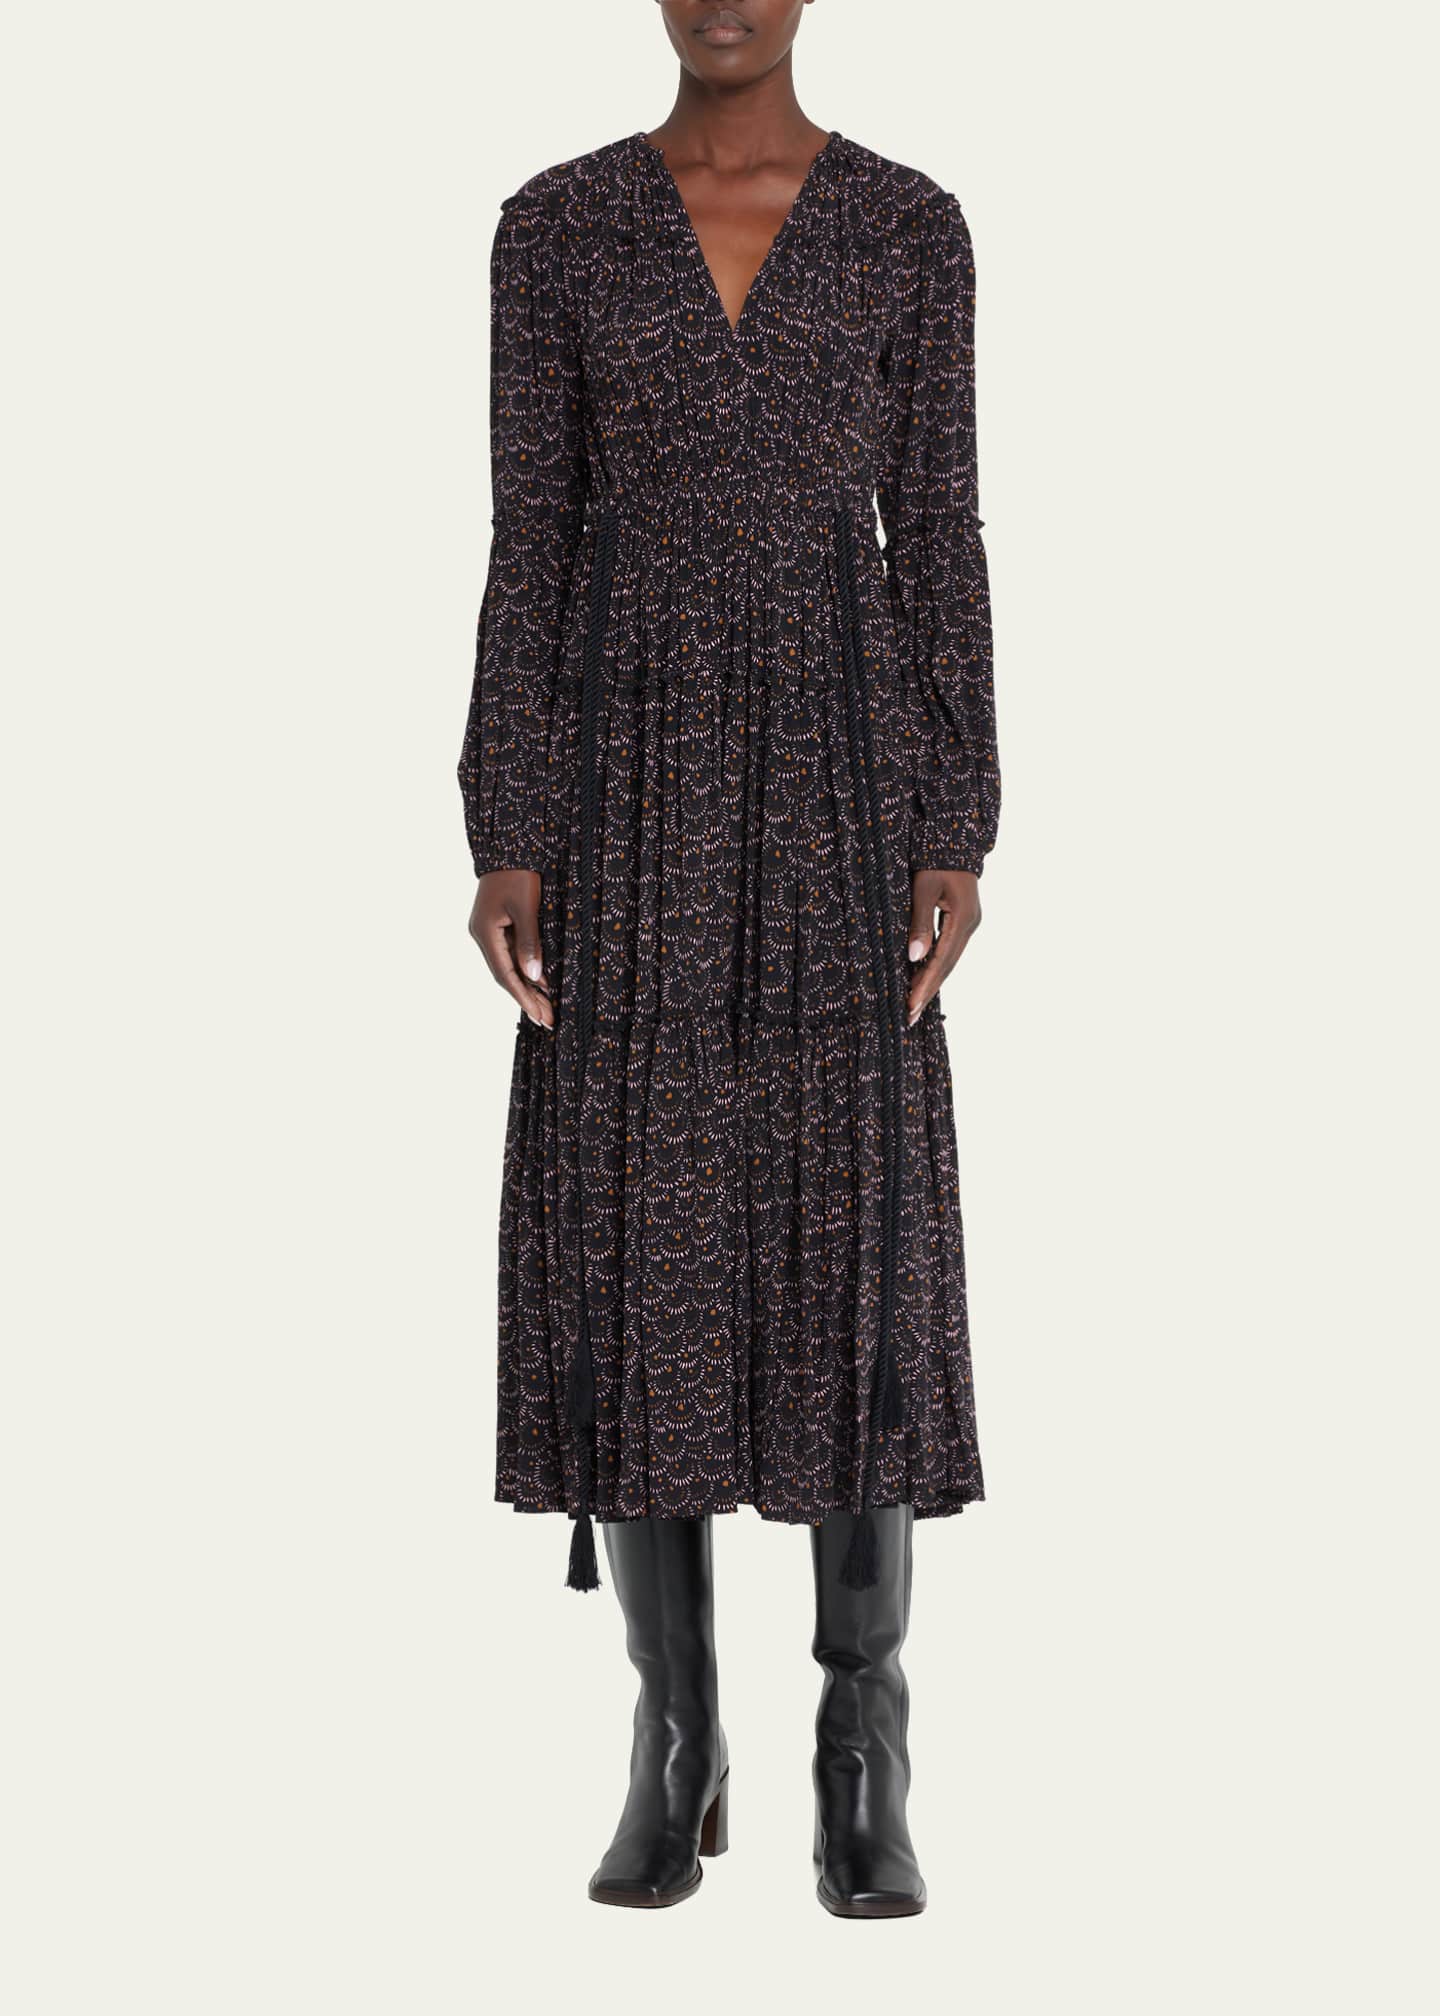 A.L.C. Joana Tiered Side-Tie Maxi Dress - Bergdorf Goodman